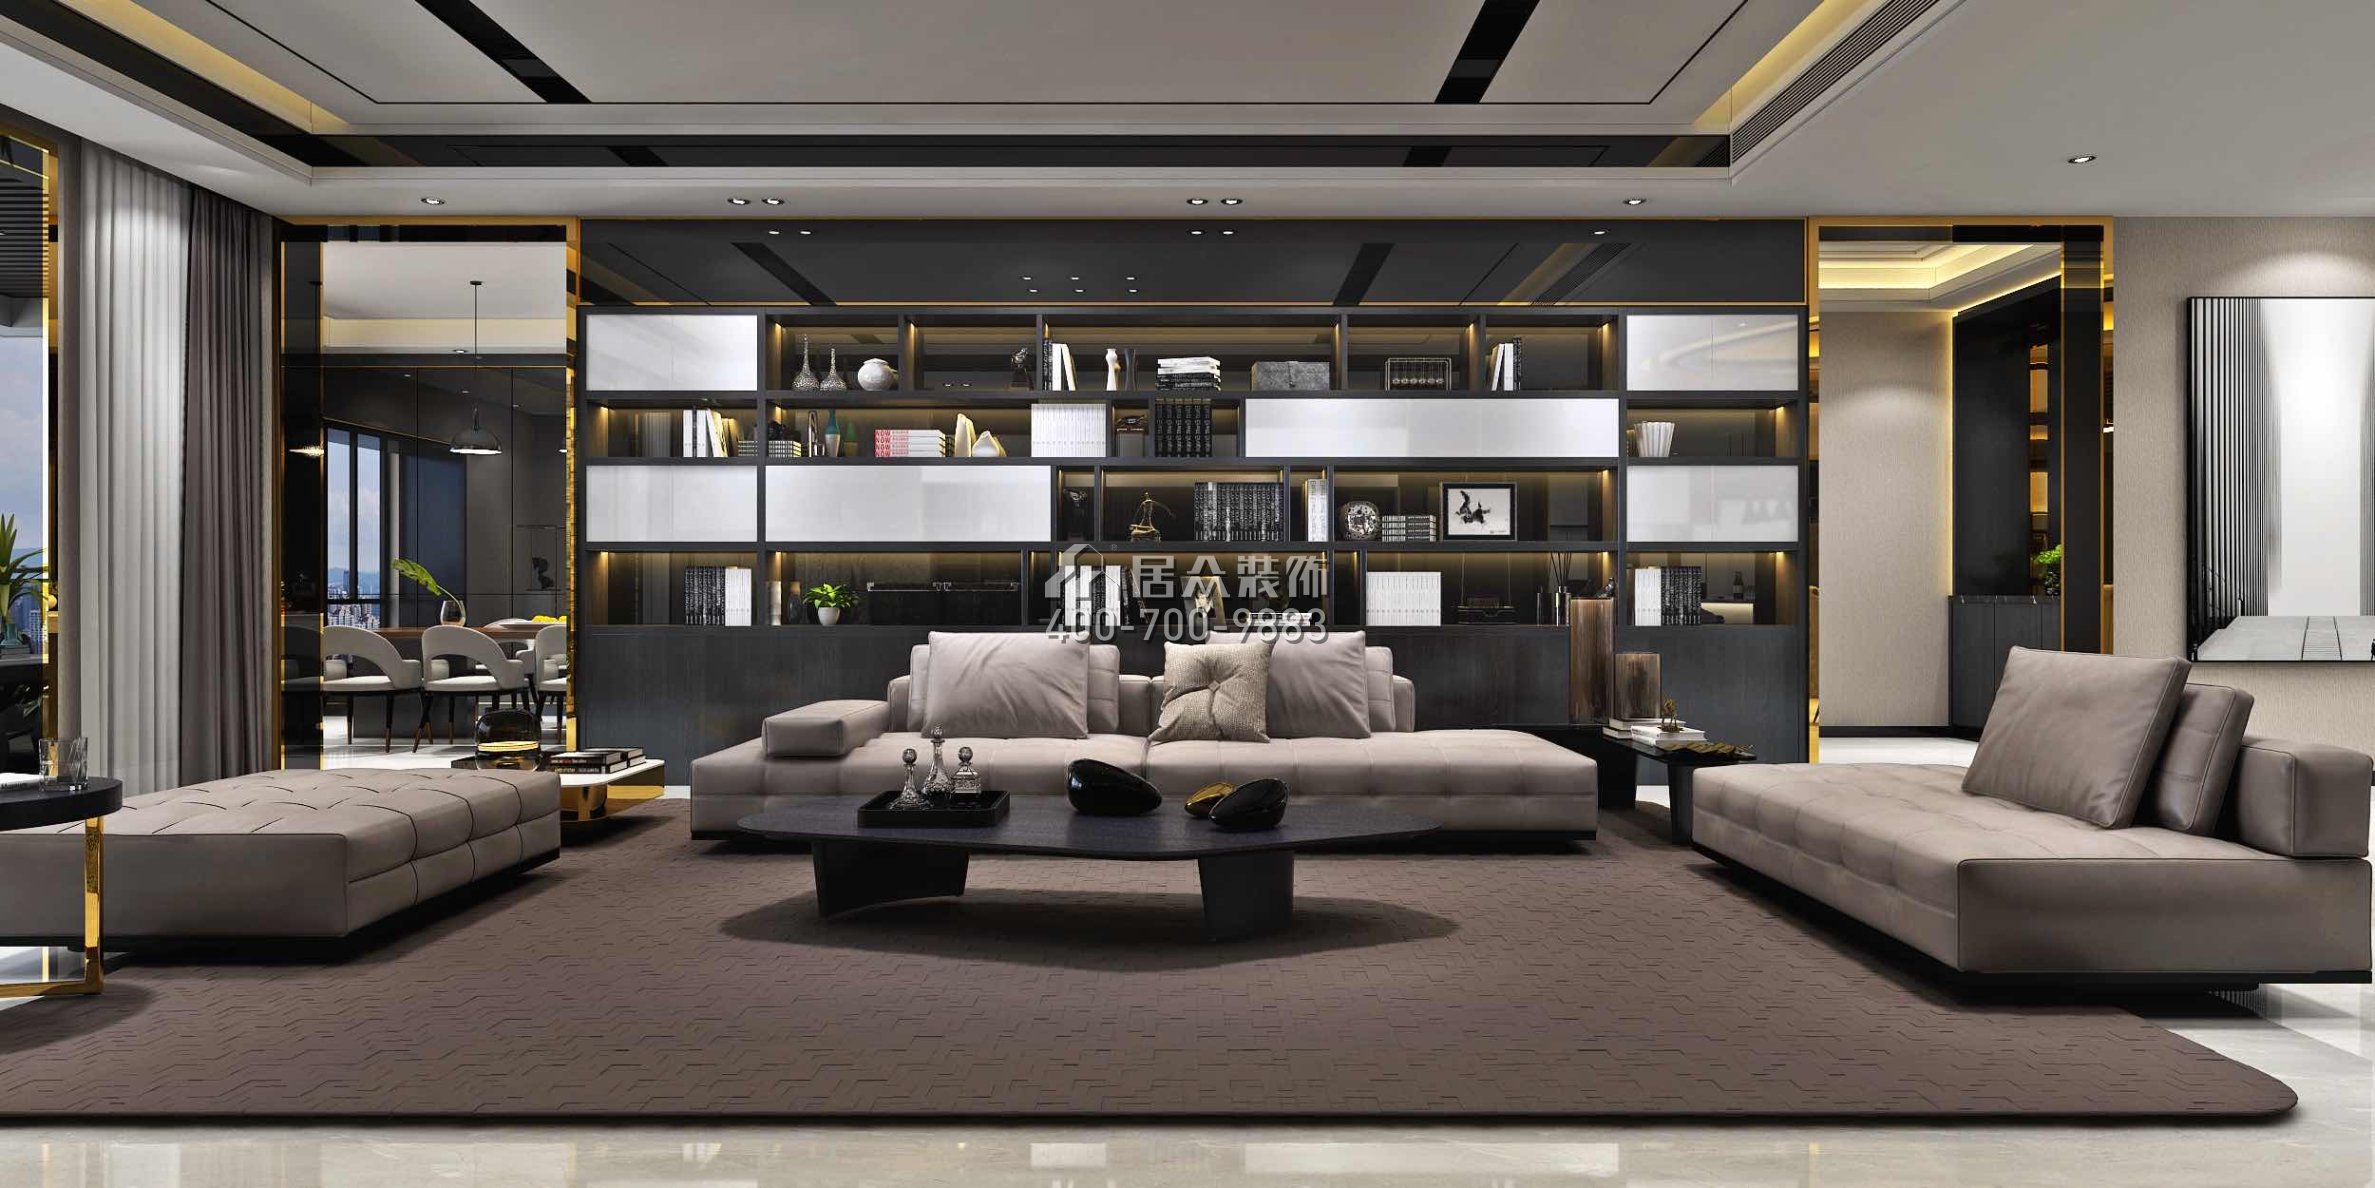 龙泉豪苑560平方米现代简约风格平层户型客厅装修效果图